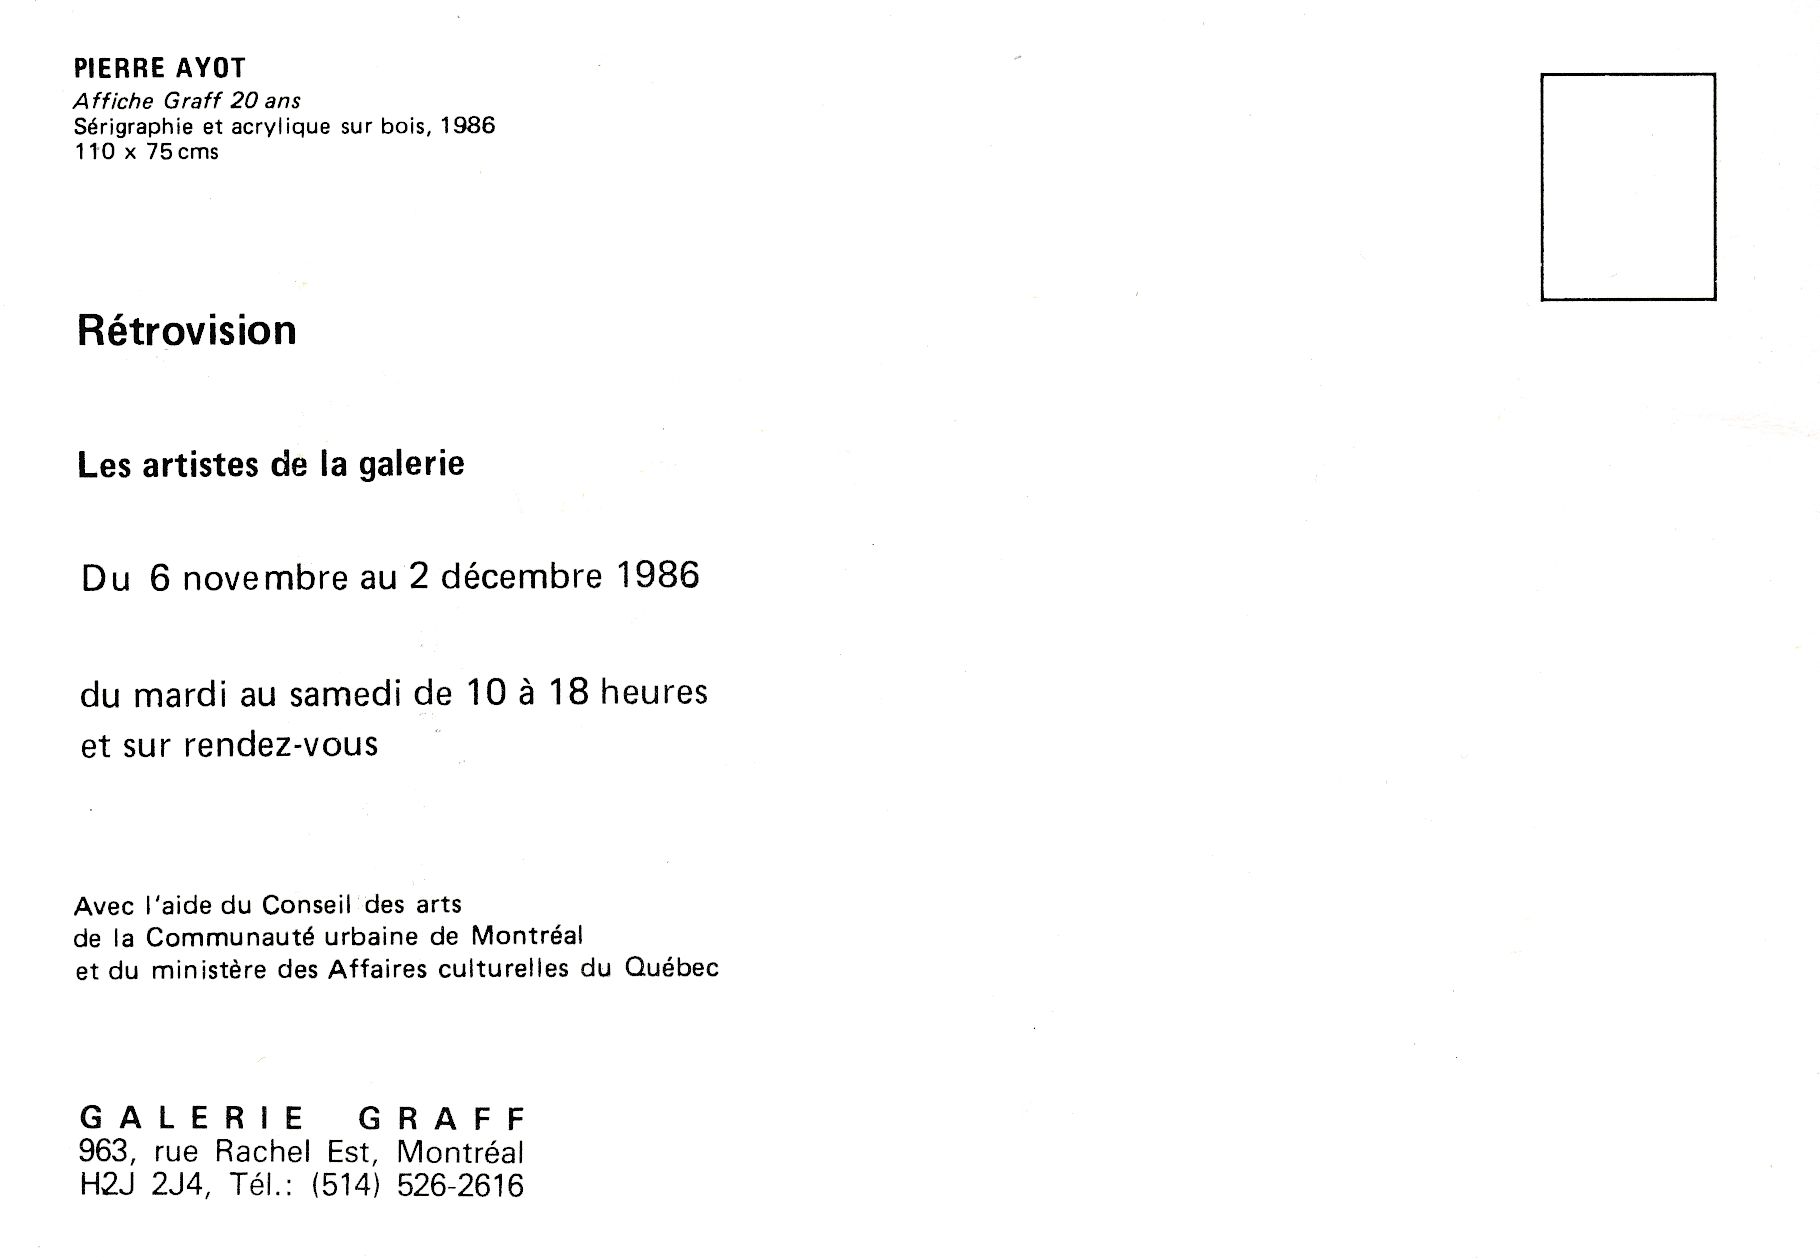 Carton d’invitation de l’exposition Rétrovision. Les artistes de la Galerie, Galerie Graff, Montréal, 1986. Verso.